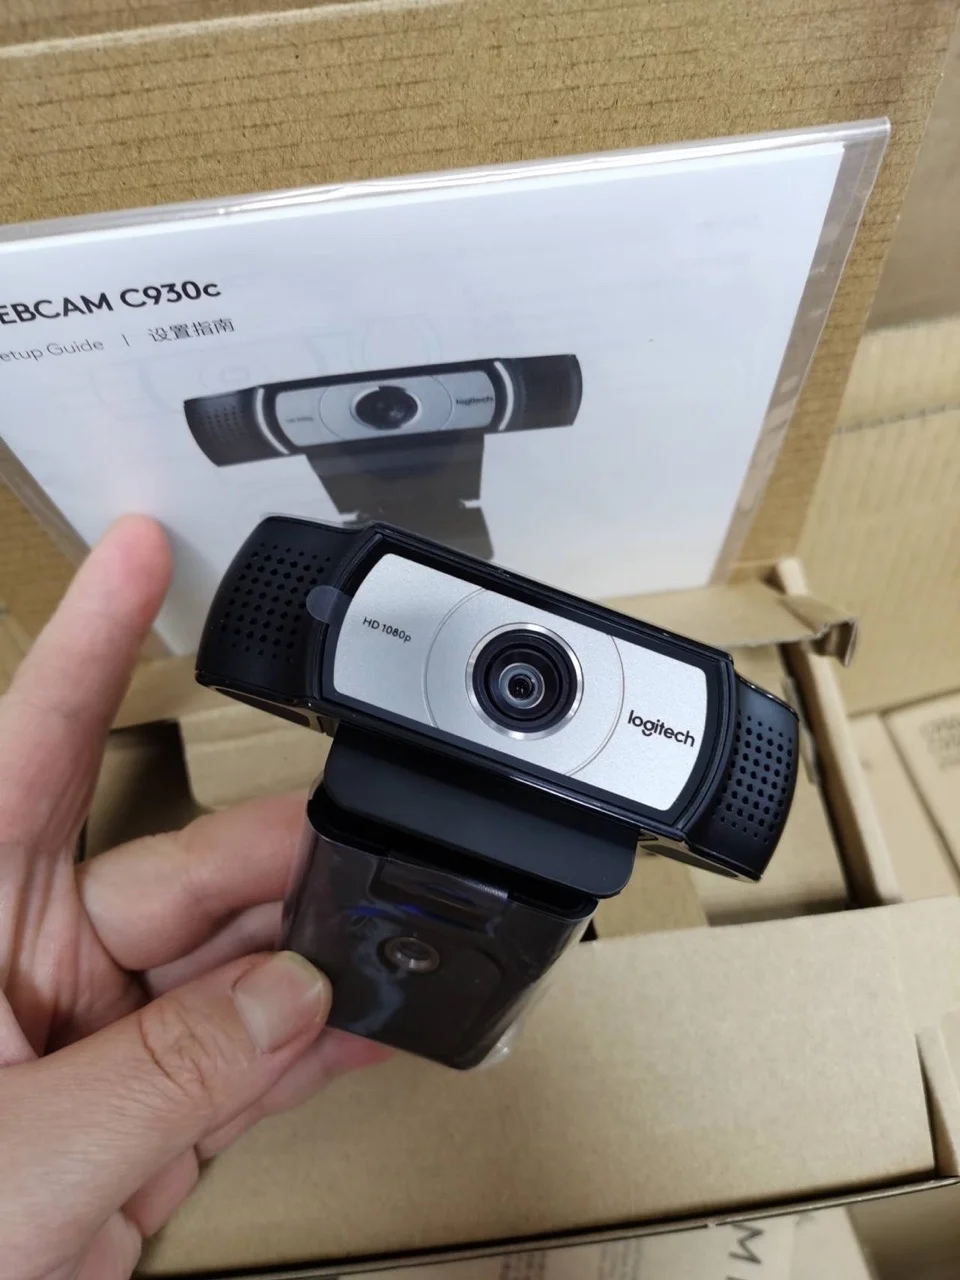 Logitech Webcam C270 C270i C920 C922 Pro C930c C310 C670i Home Network Course Webcam Camera